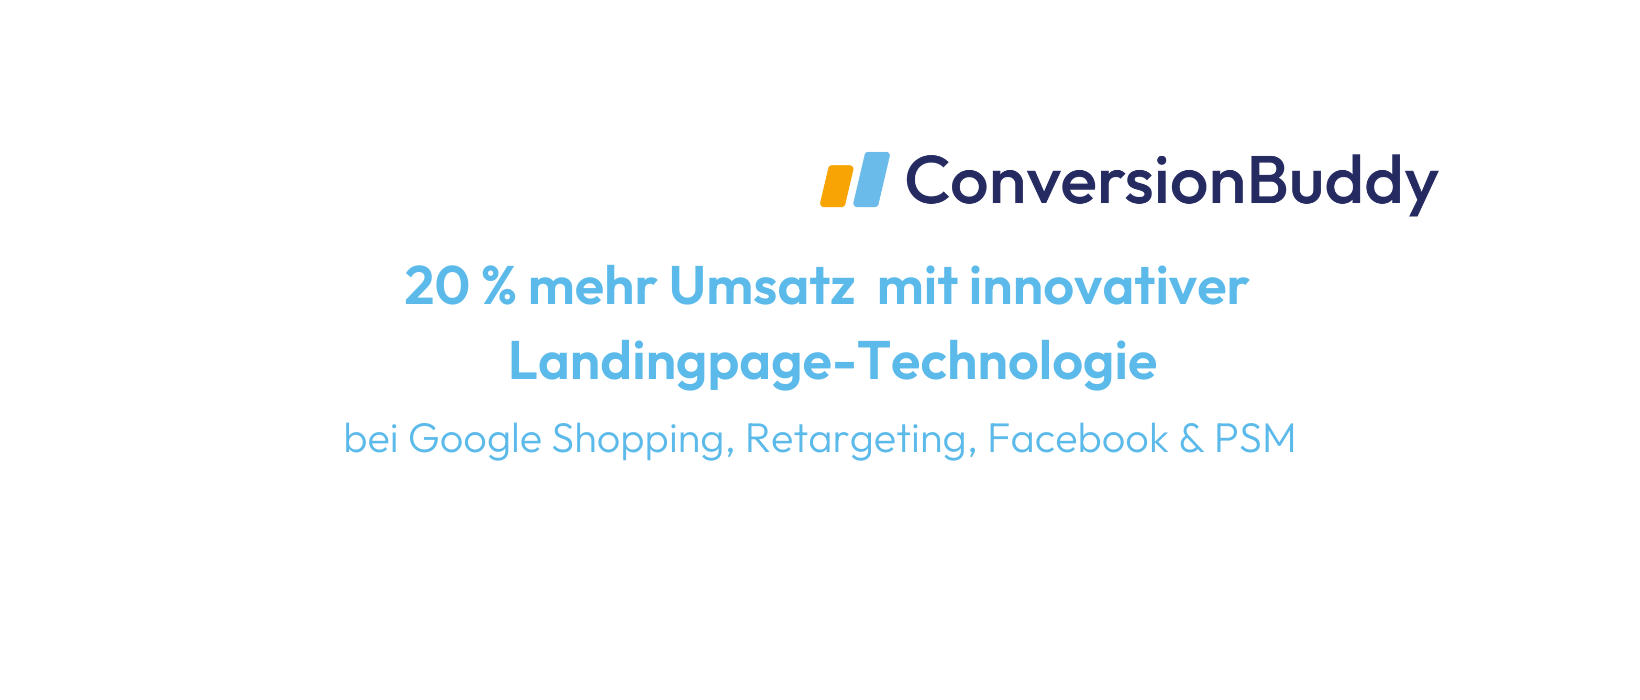 ConversionBuddy / startup von Bremen / Background